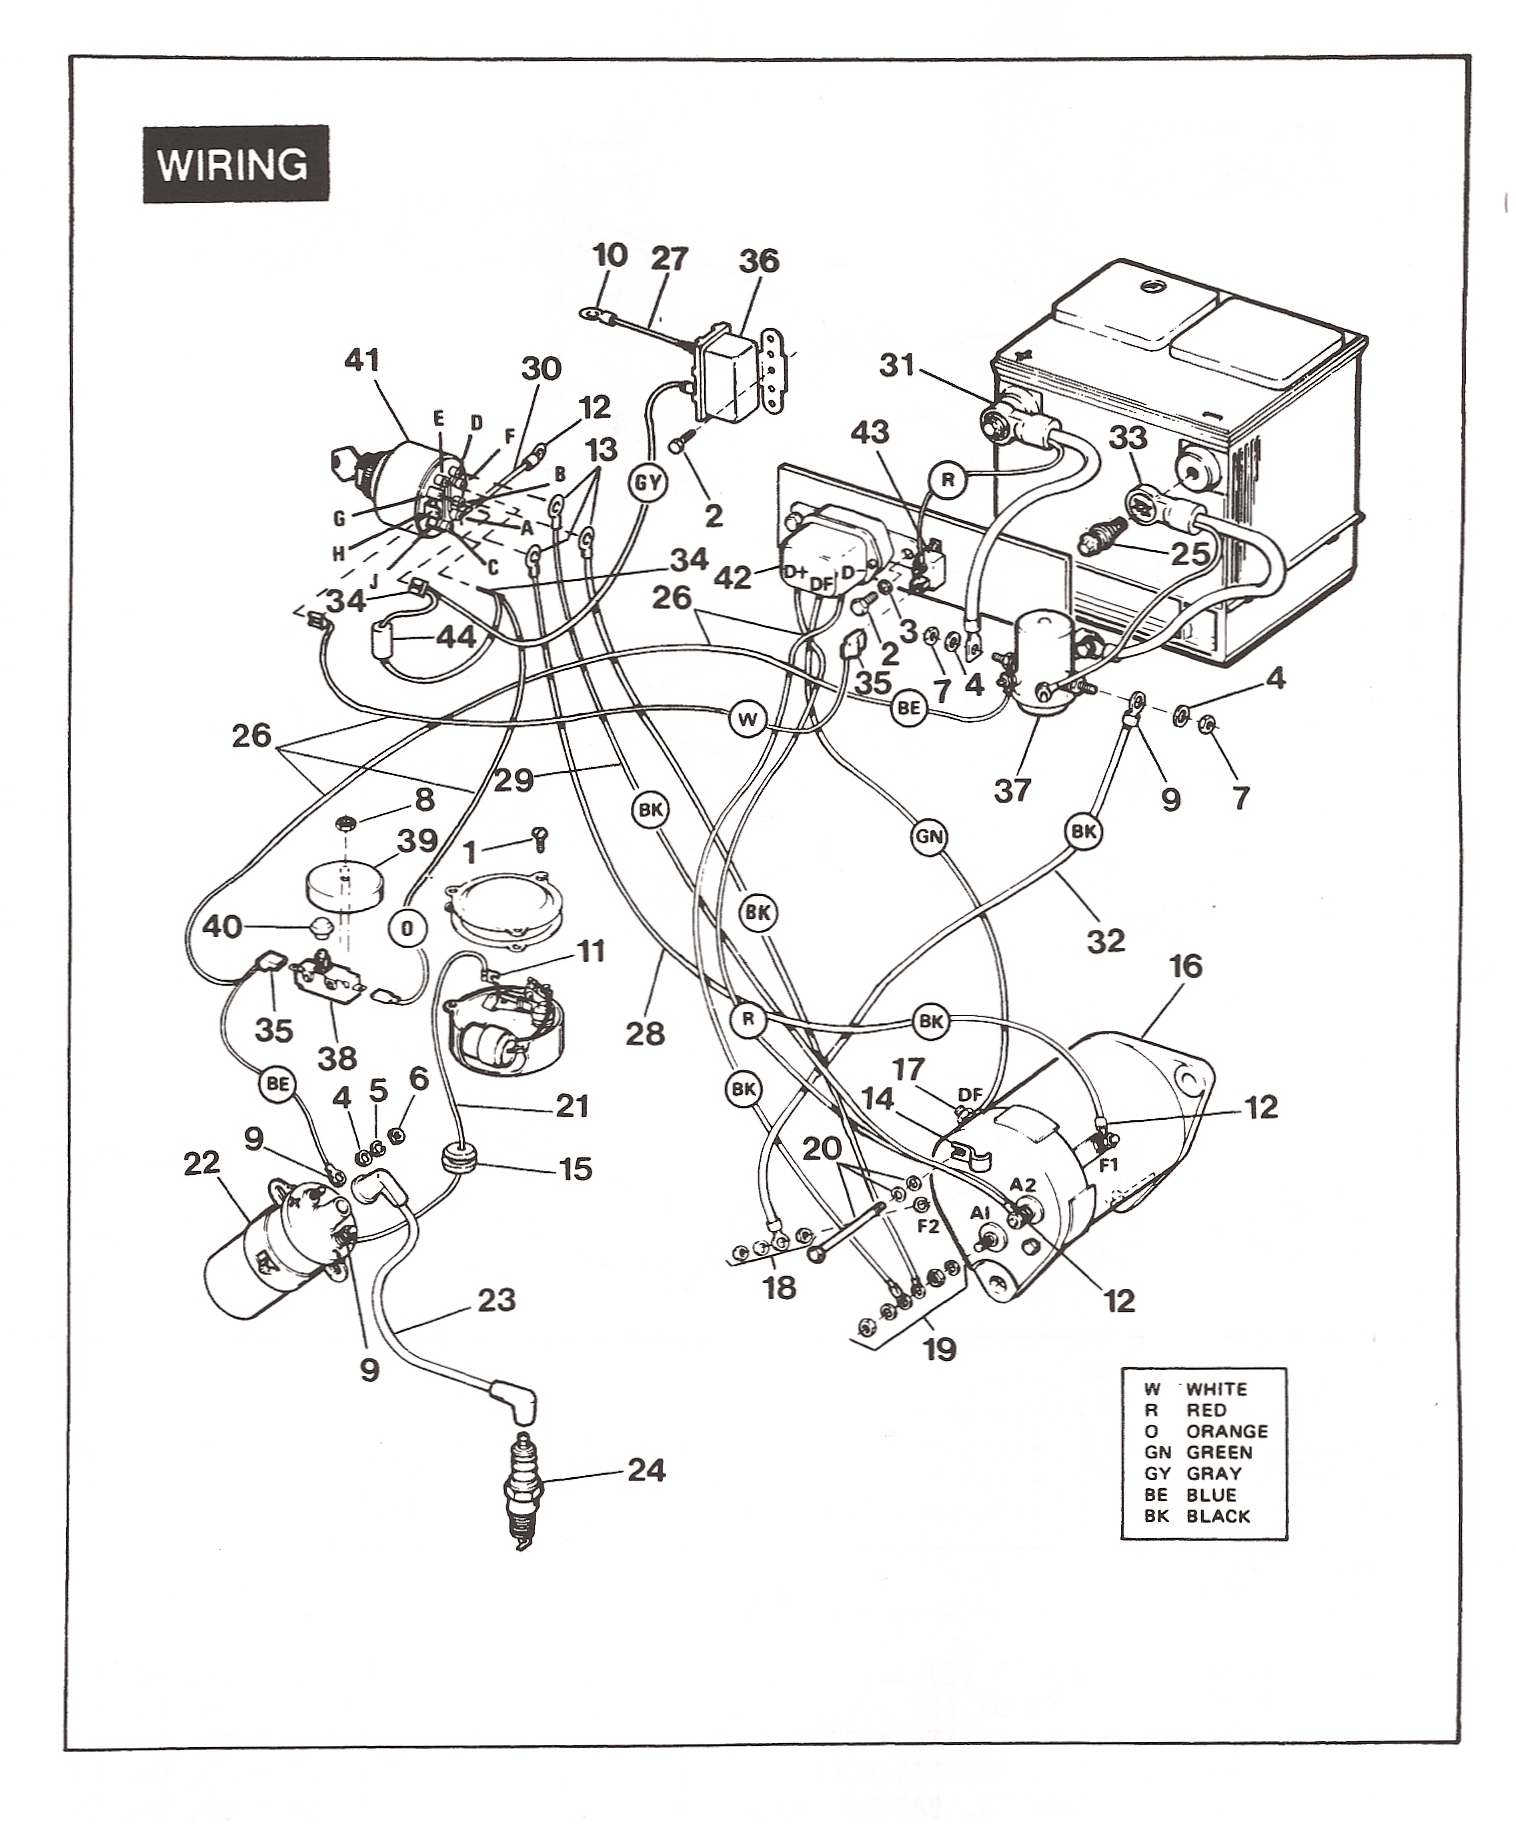 1989 gas marathon gx444 2-cycle wiring diagram